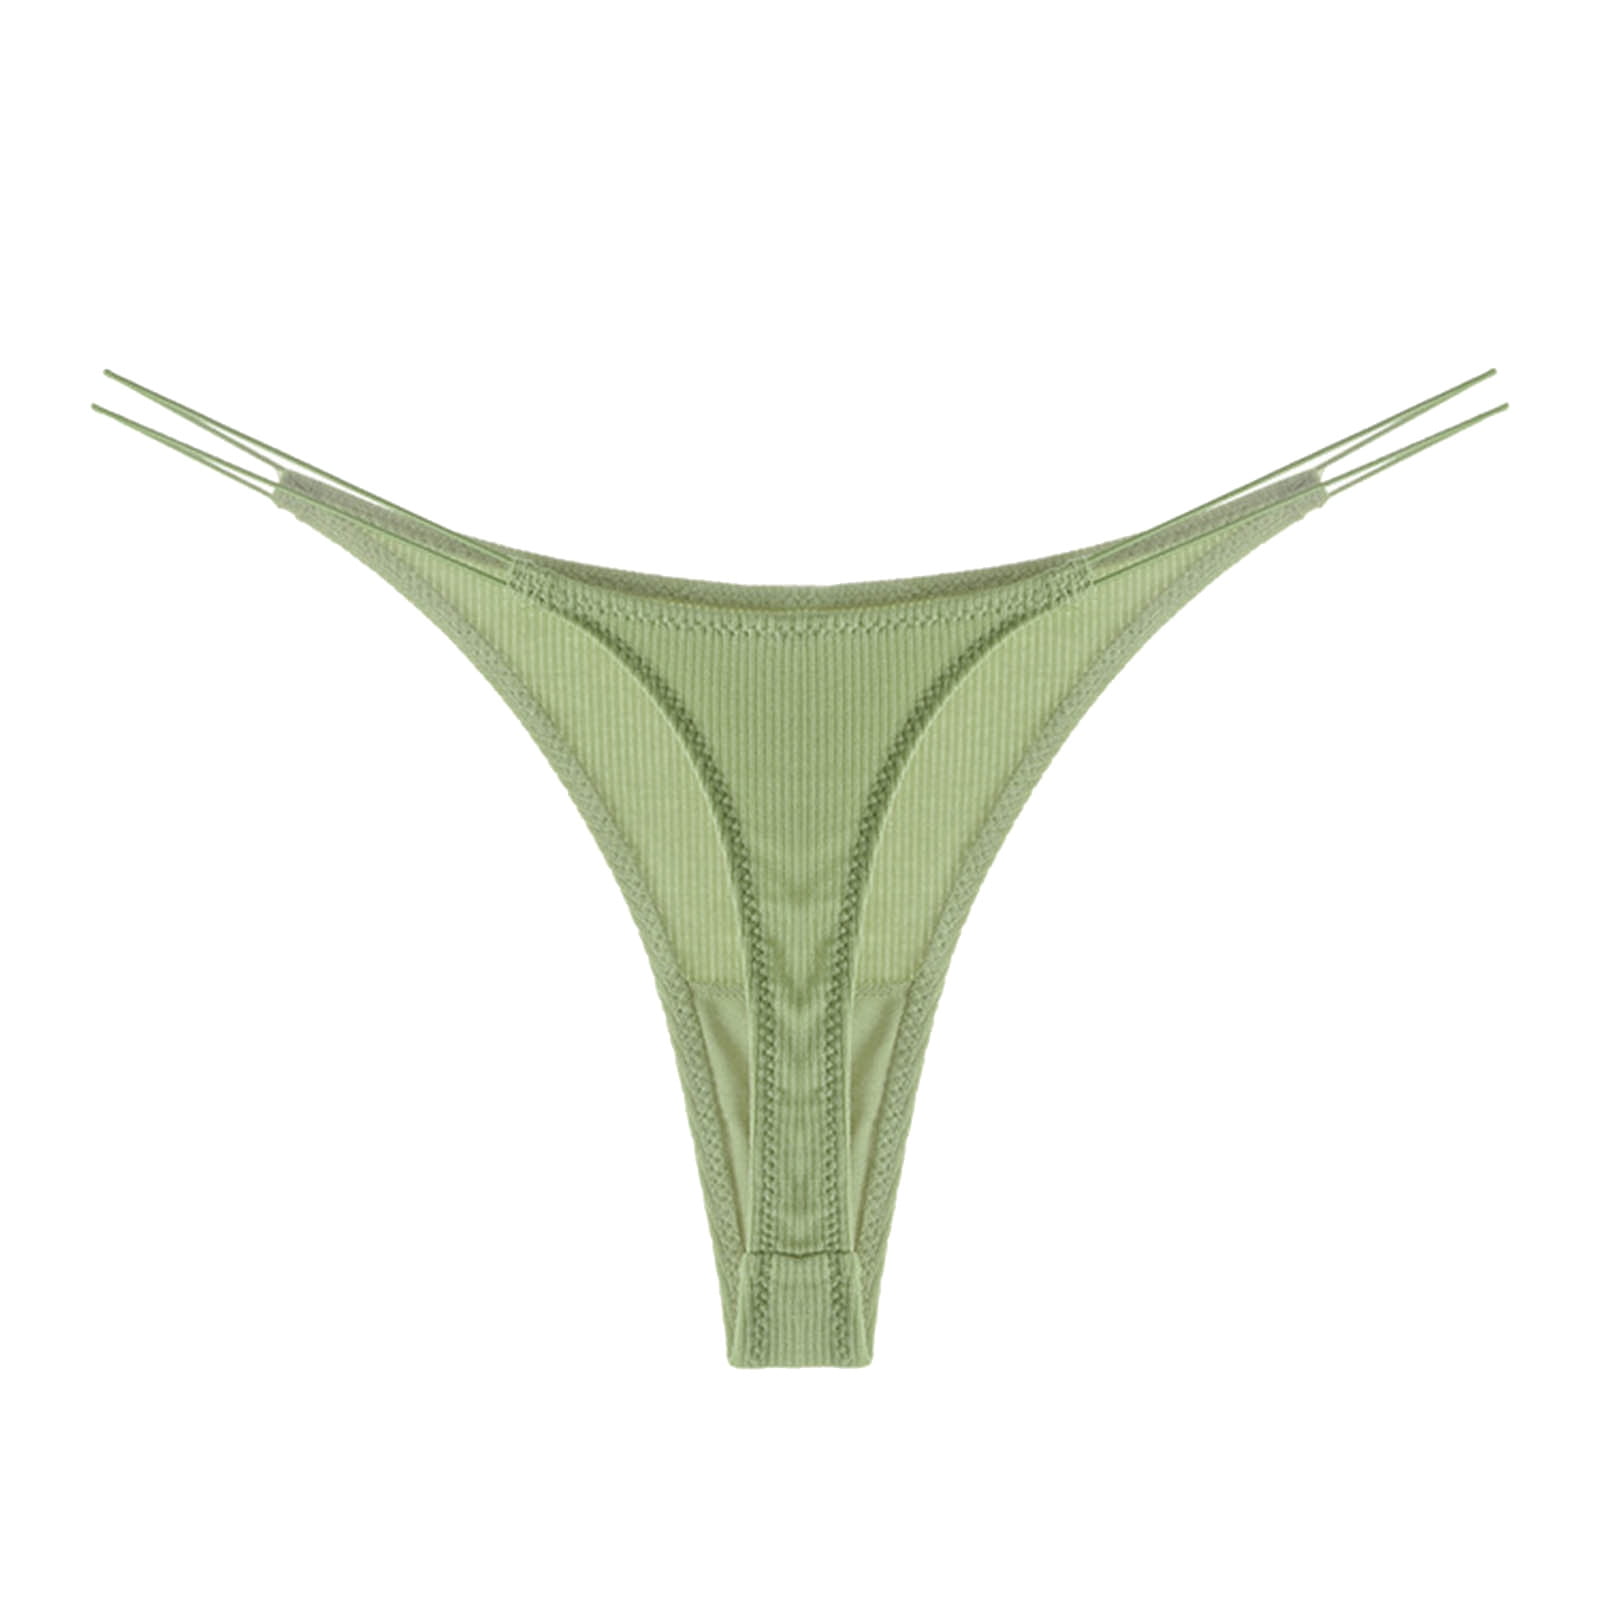 Lovskoo Seamless Underwear Breathable Stretch Panties Ultra-Thin  Non-Marking Ice Silk Women Mesh Women Underwear High Waist Abdomen Cotton  Underwear Green 